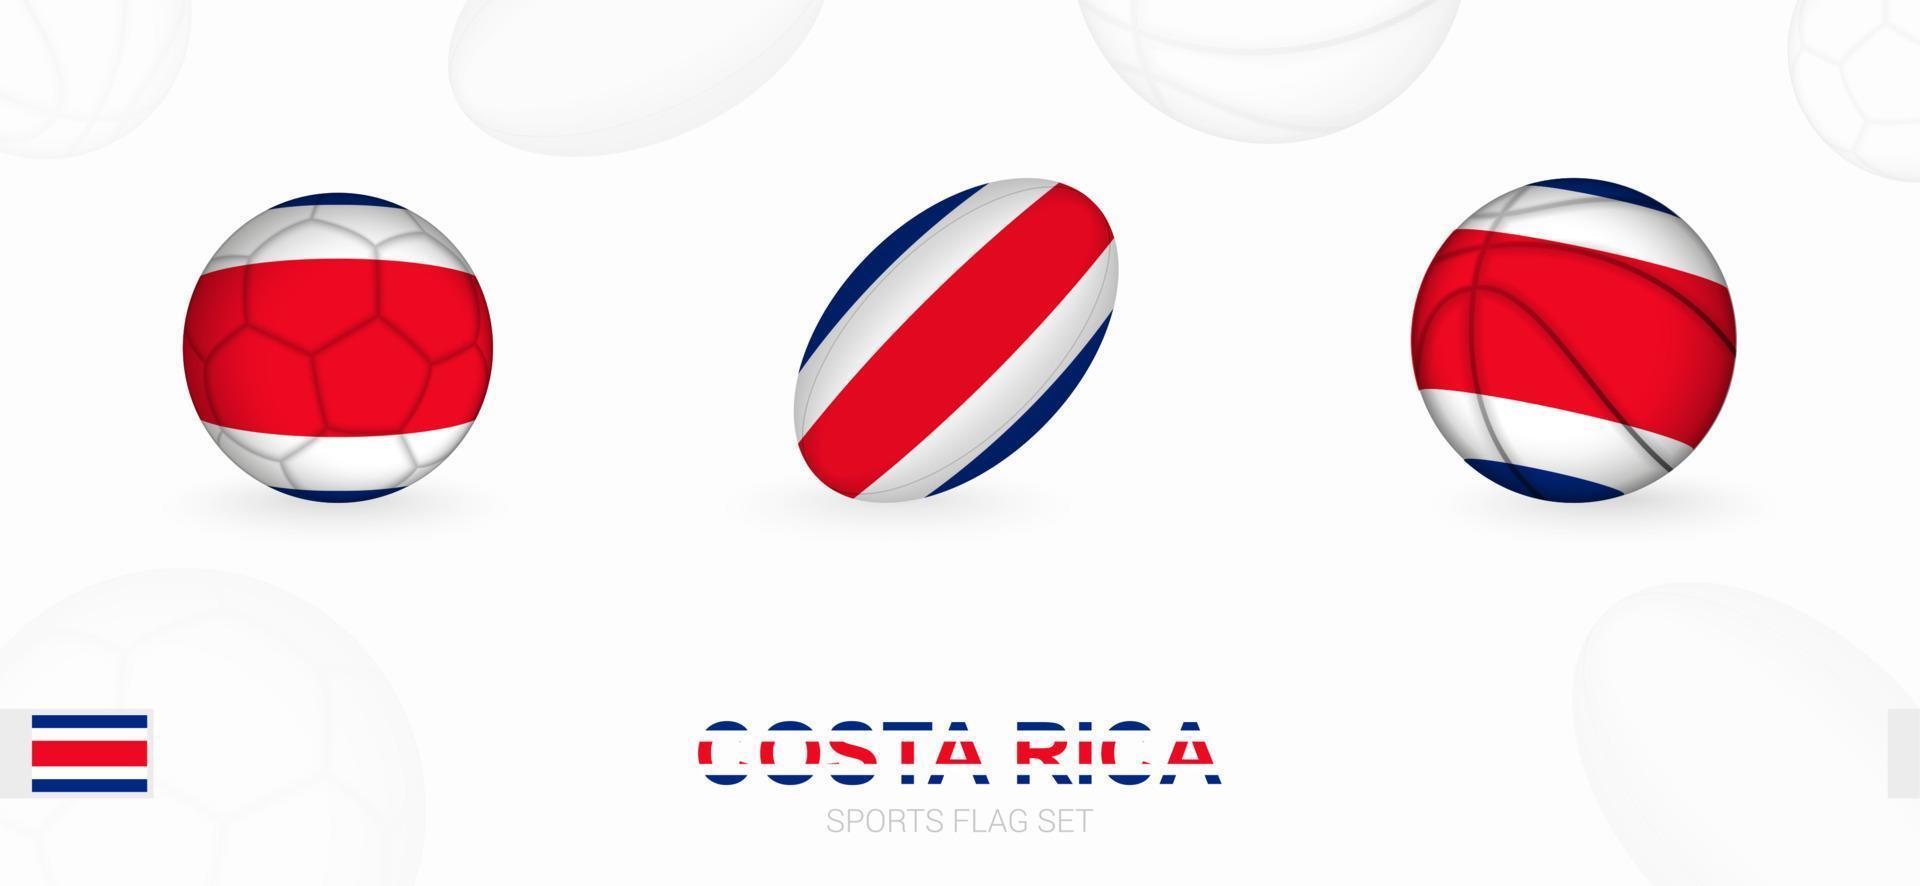 sport- pictogrammen voor Amerikaans voetbal, rugby en basketbal met de vlag van costa rica. vector